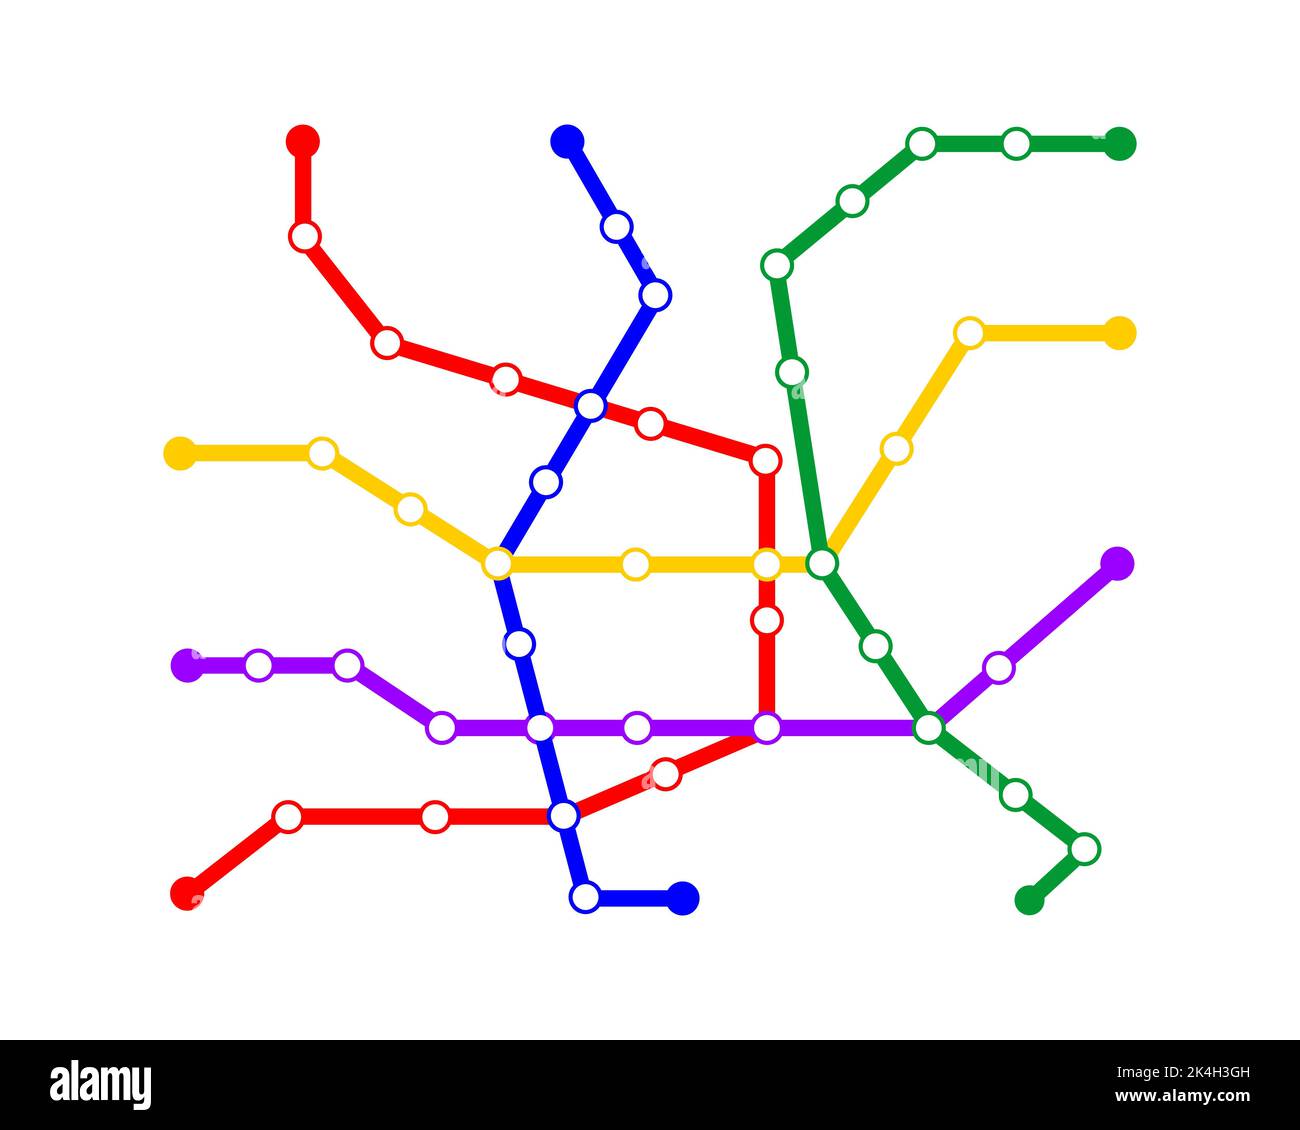 Modello mappa metropolitana. Schema della metropolitana con linee a 5 vie. Diagramma infografico della rete pubblica di trasporto rapido sotterraneo con stazioni isolate su sfondo bianco. Illustrazione vettoriale Illustrazione Vettoriale